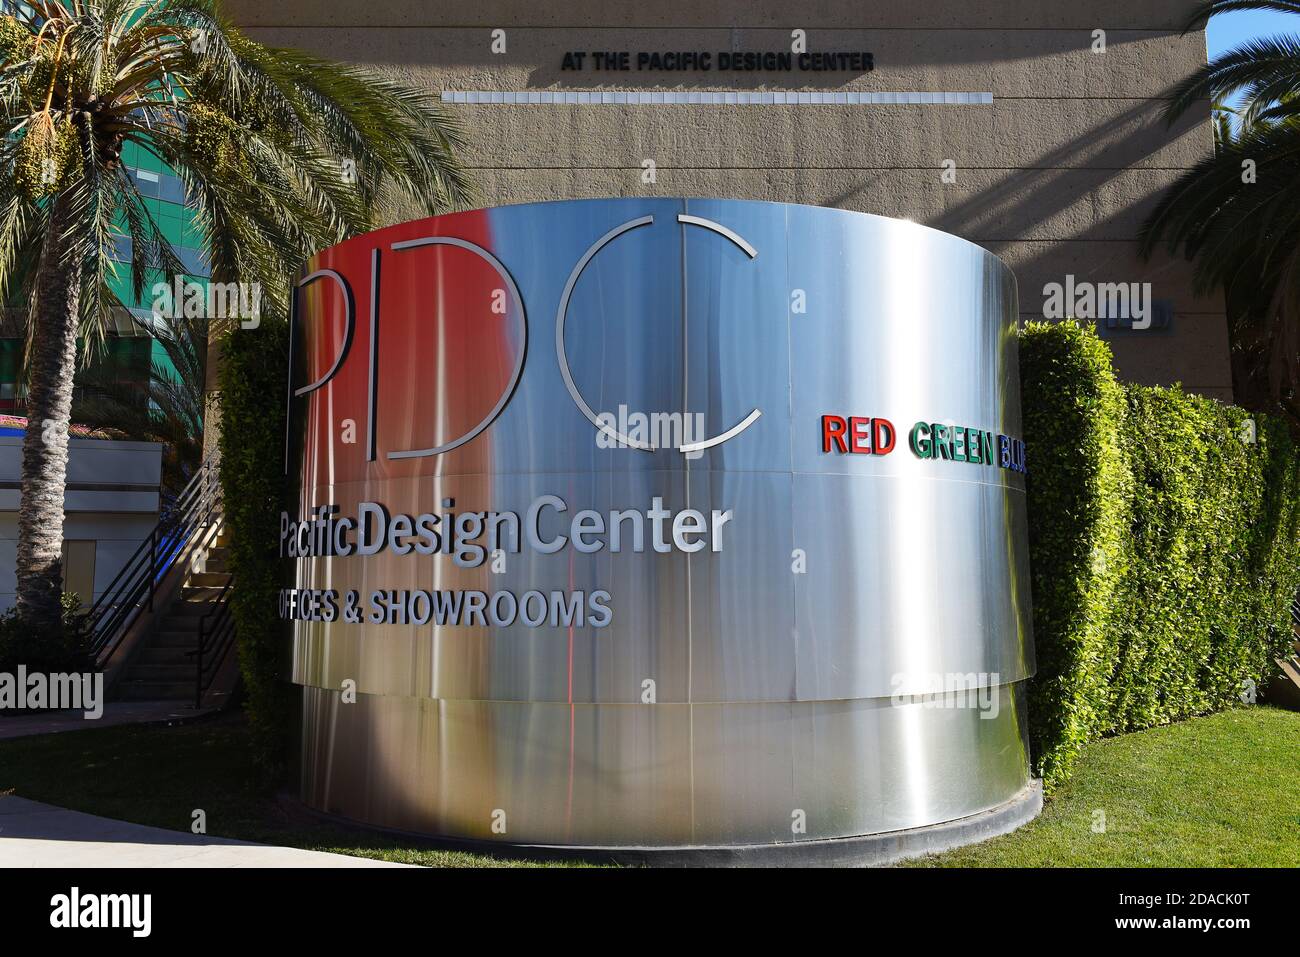 WEST HOLLYWOOD, KALIFORNIEN - 10 NOV 2020: Unterzeichnen Sie im Pacific Design Center eine Mulit-use-Anlage für die Design-Community, mit drei Gebäuden in RGB, Stockfoto